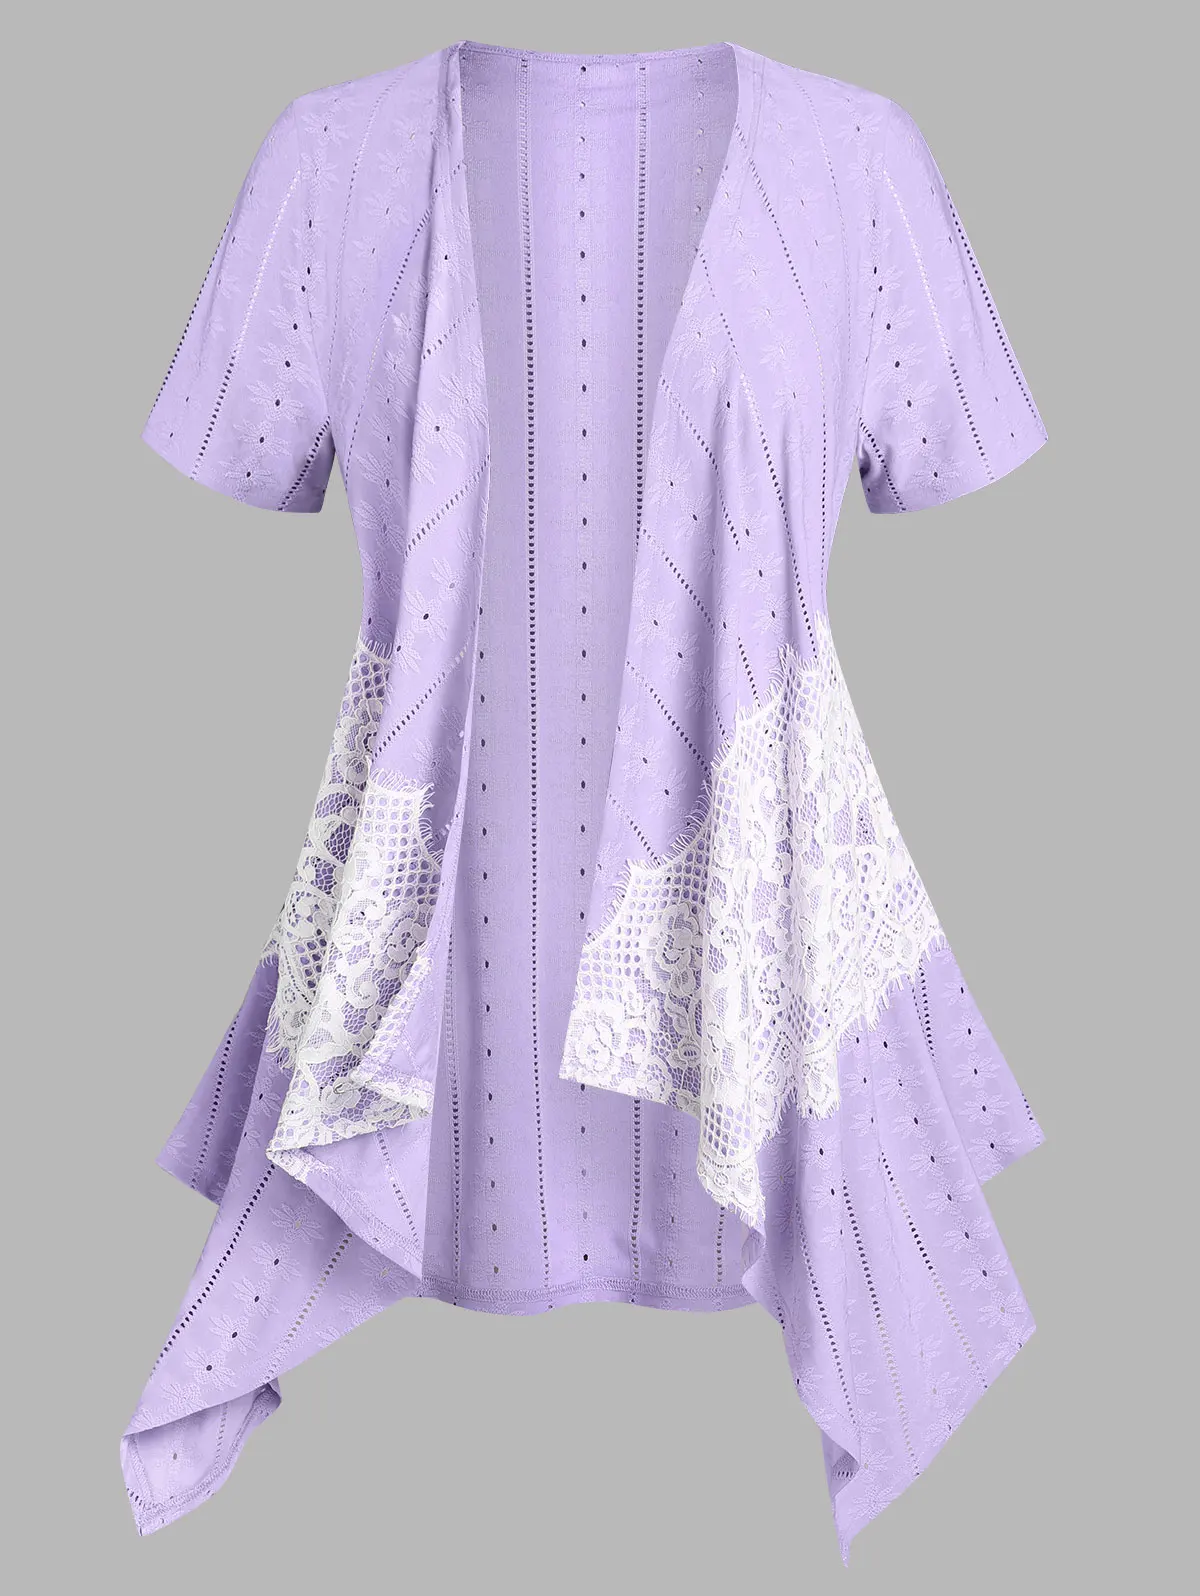 

Женский дышащий Топ ROSEGAL с вышивкой, с кружевной вставкой, асимметричный открытый кардиган спереди, светло-фиолетовый, 4XL